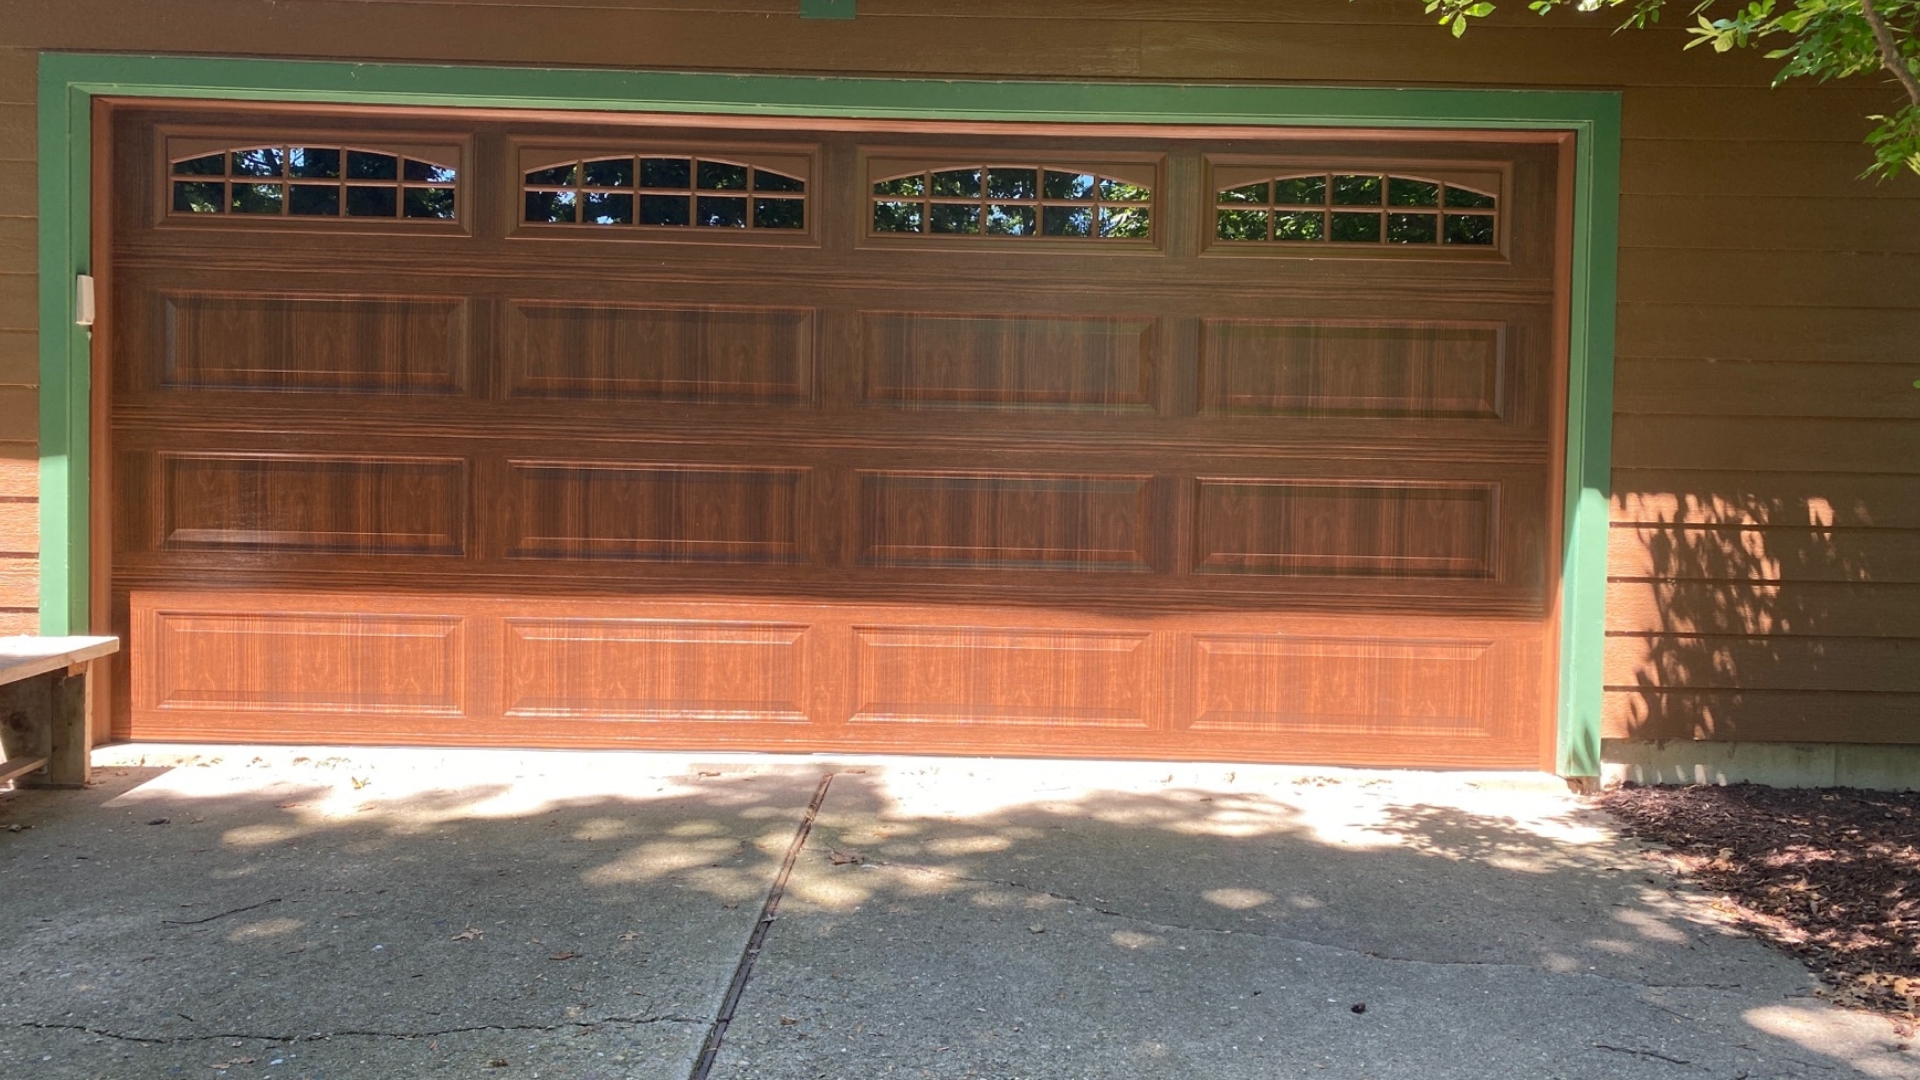 A steel garage door with custom panels